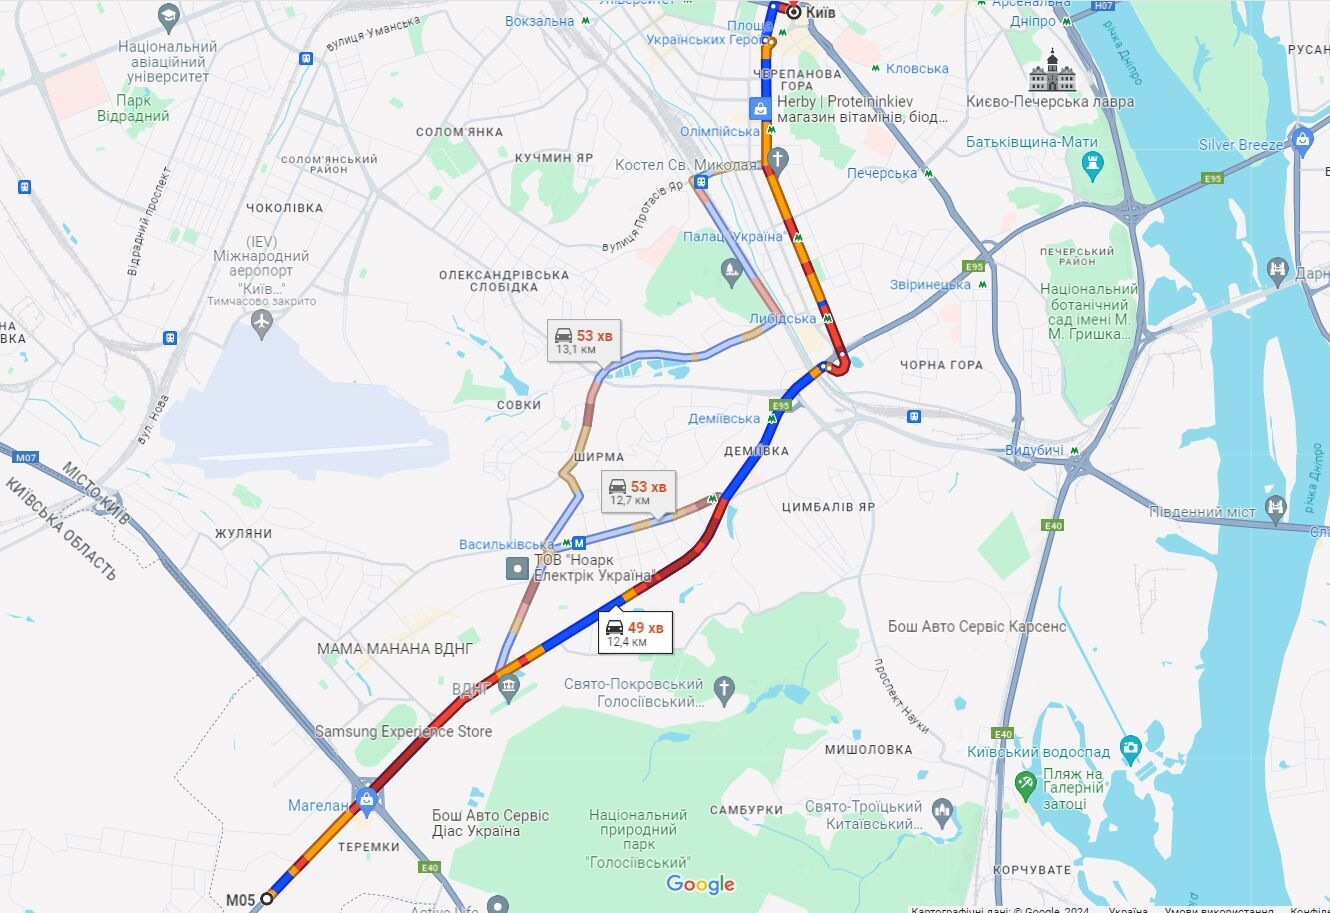 В Киеве на дорогах образовались утренние пробки: где затруднено движение авто. Карта